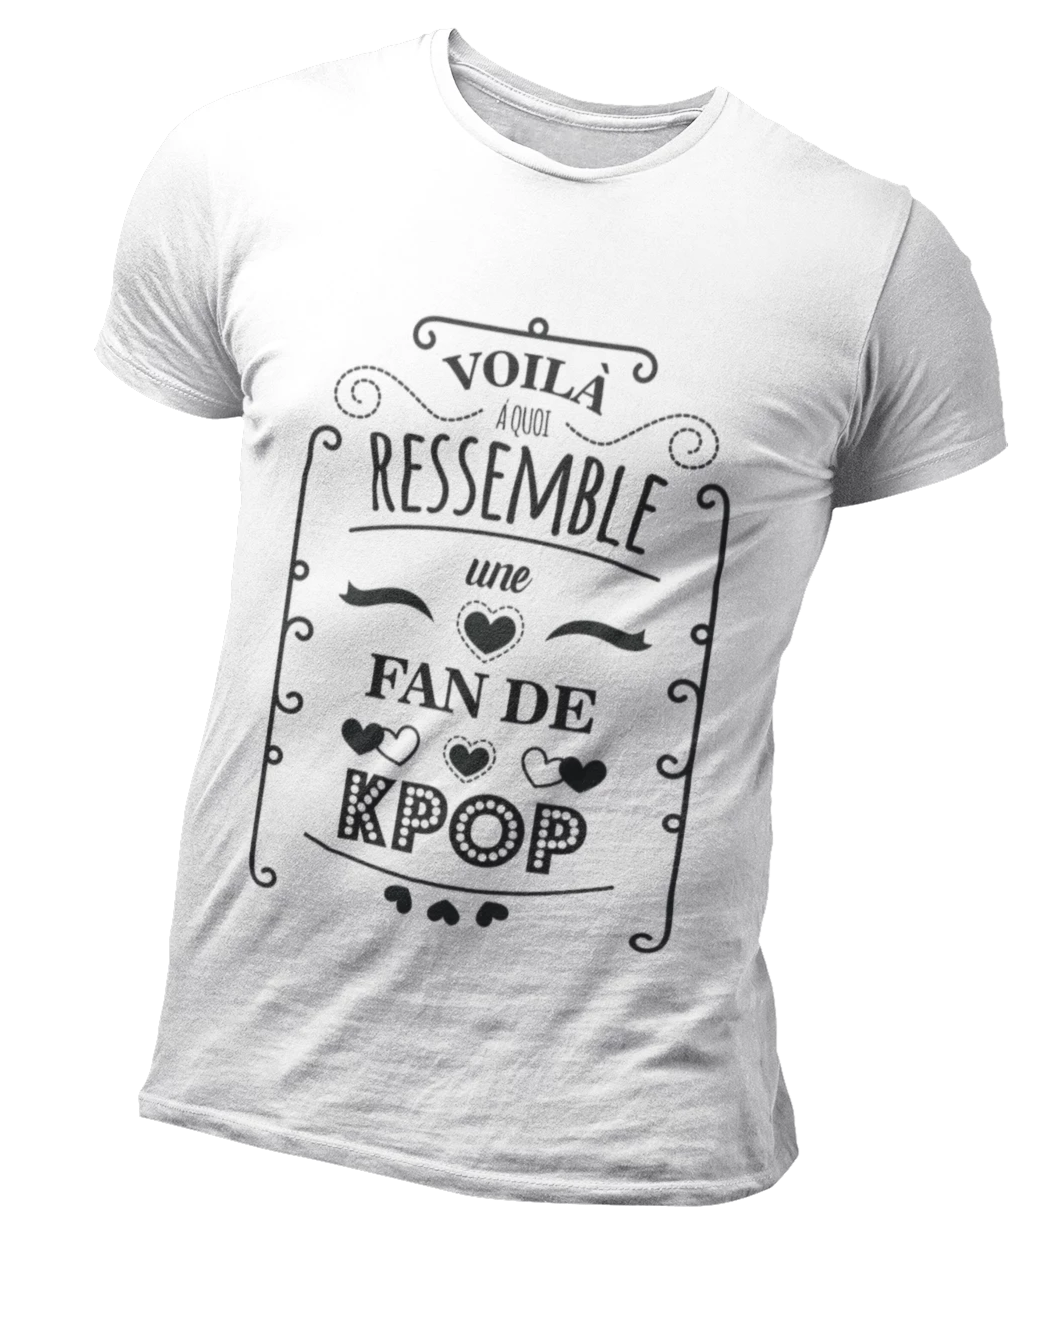 T Shirt Fan Kpop | MJ FRANKO